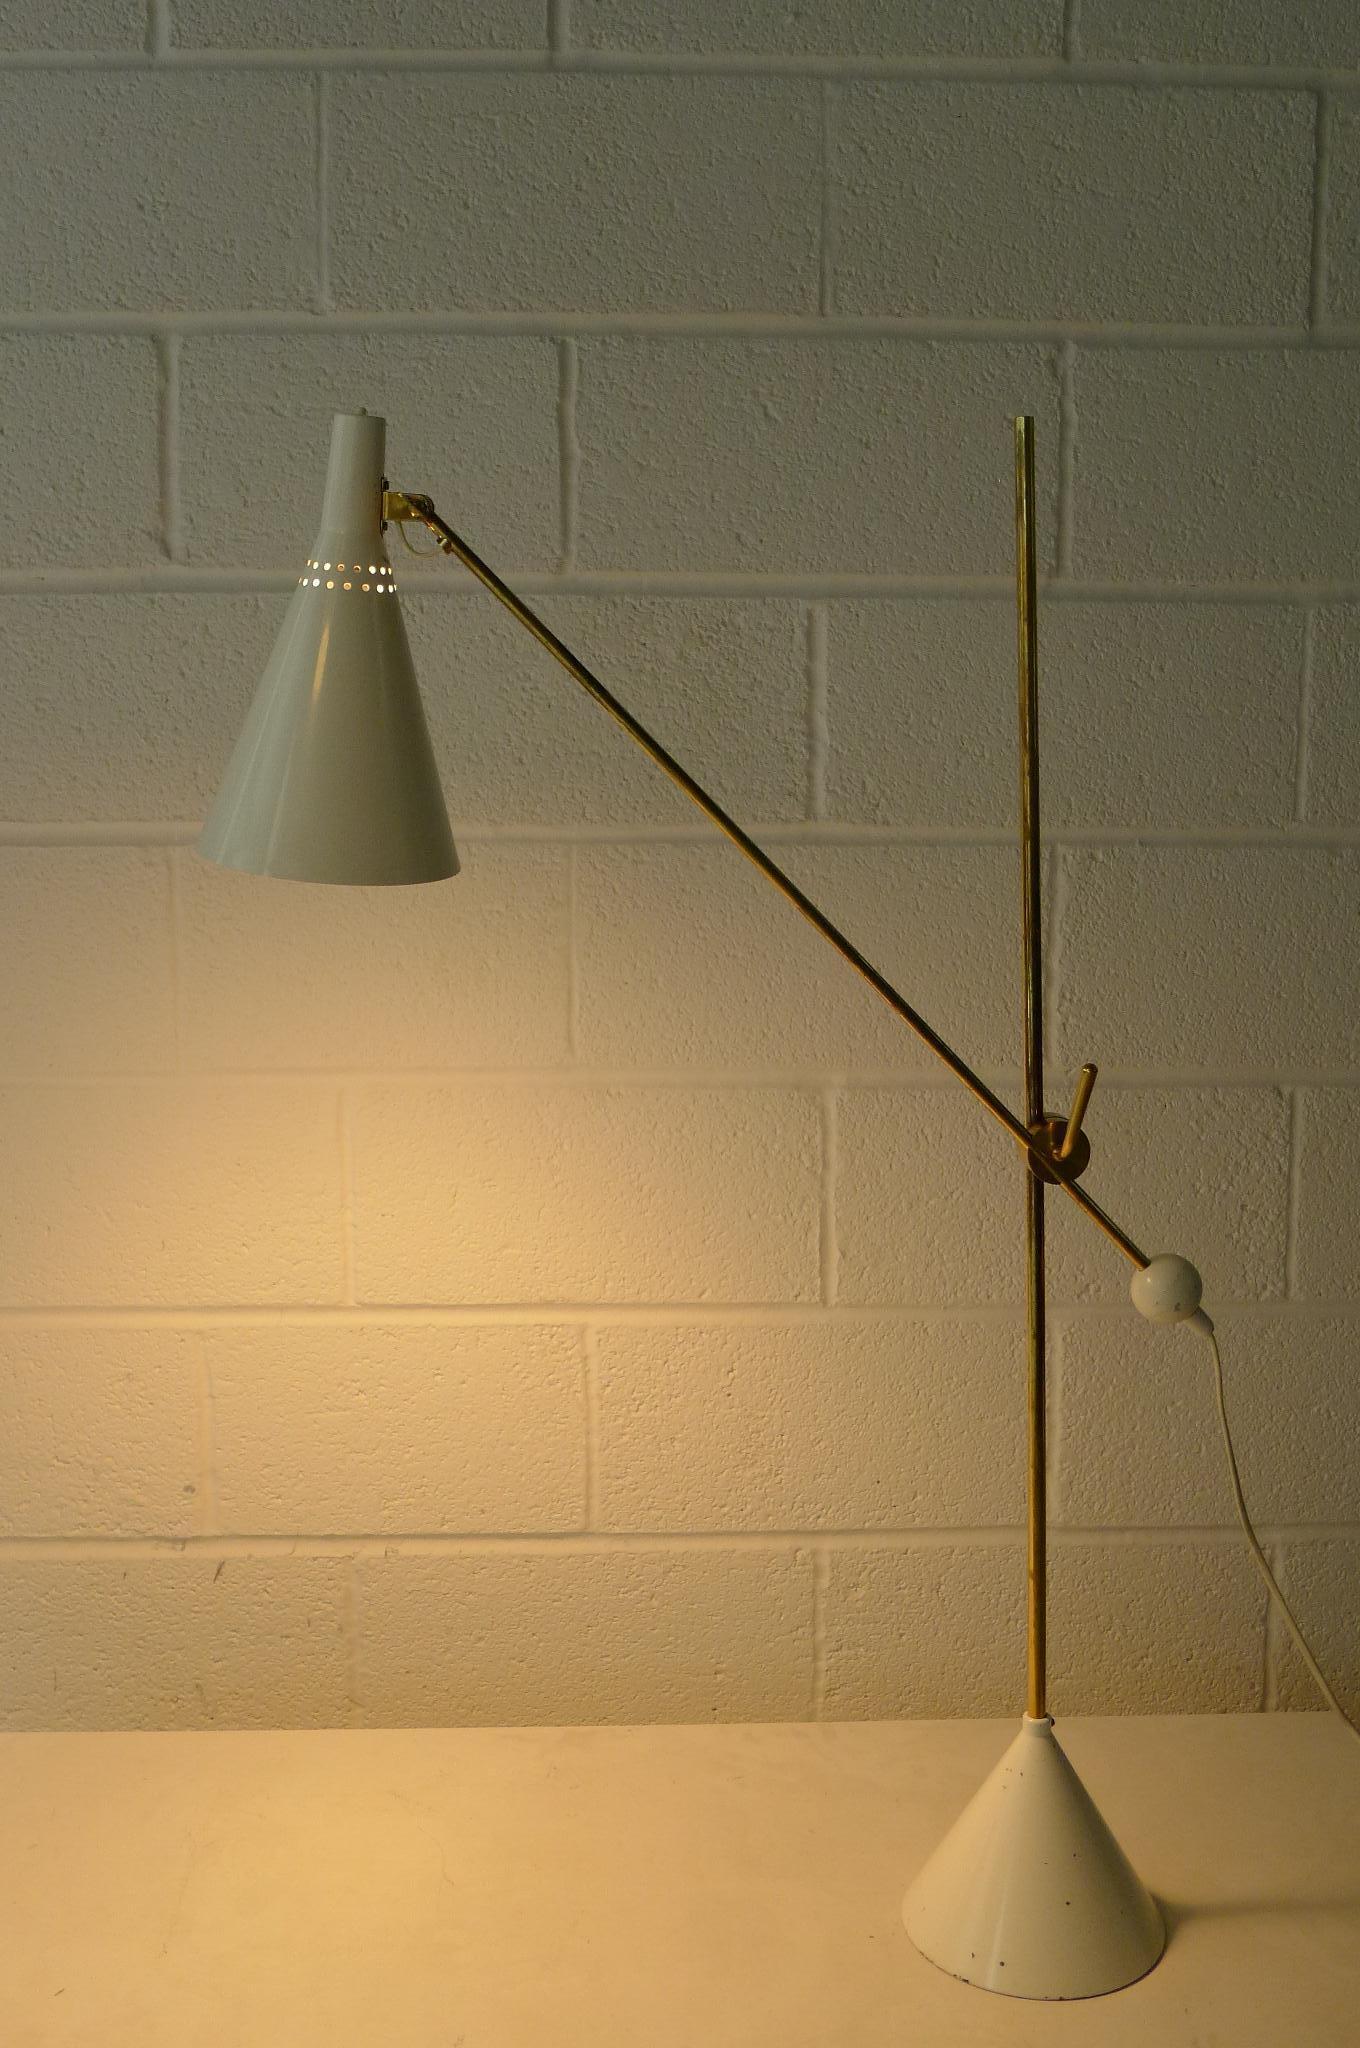 Brass Tapio Wirkkala Adjustable Floor Lamp, Model K-10 11 by Idman Oy, Finland